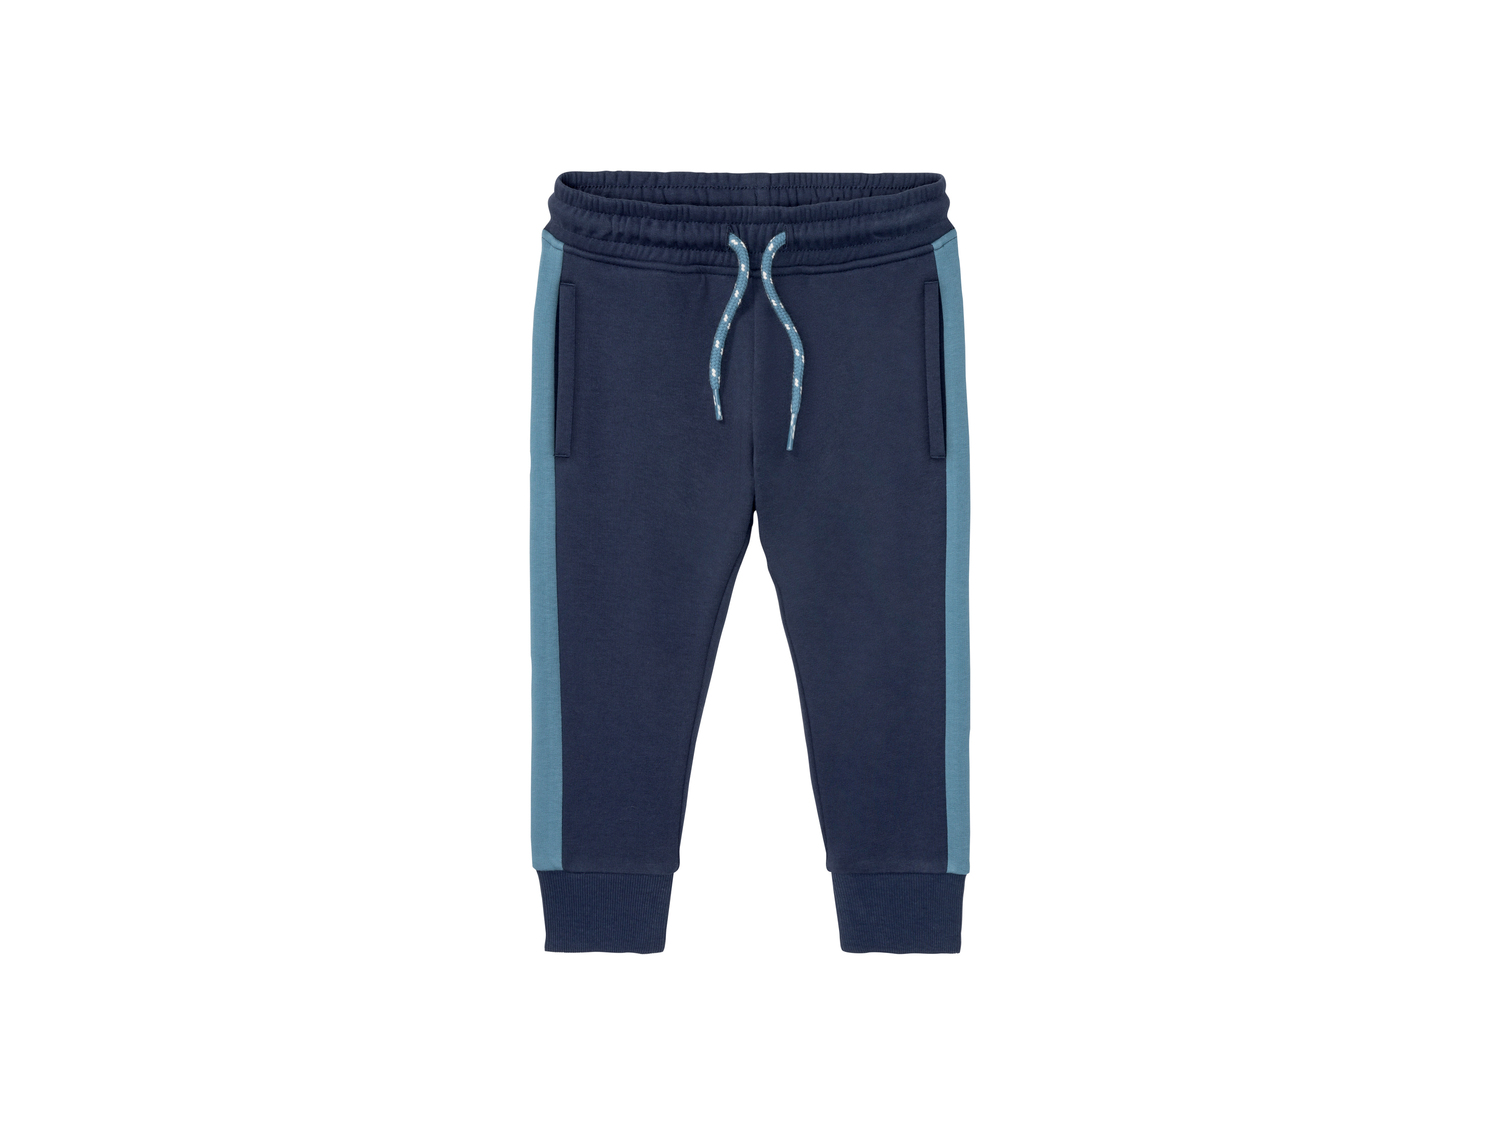 Pantaloni sportivi per bambino Lupilu, prezzo 4.99 &#8364; 
Misure: 1-6 anni
Taglie ...